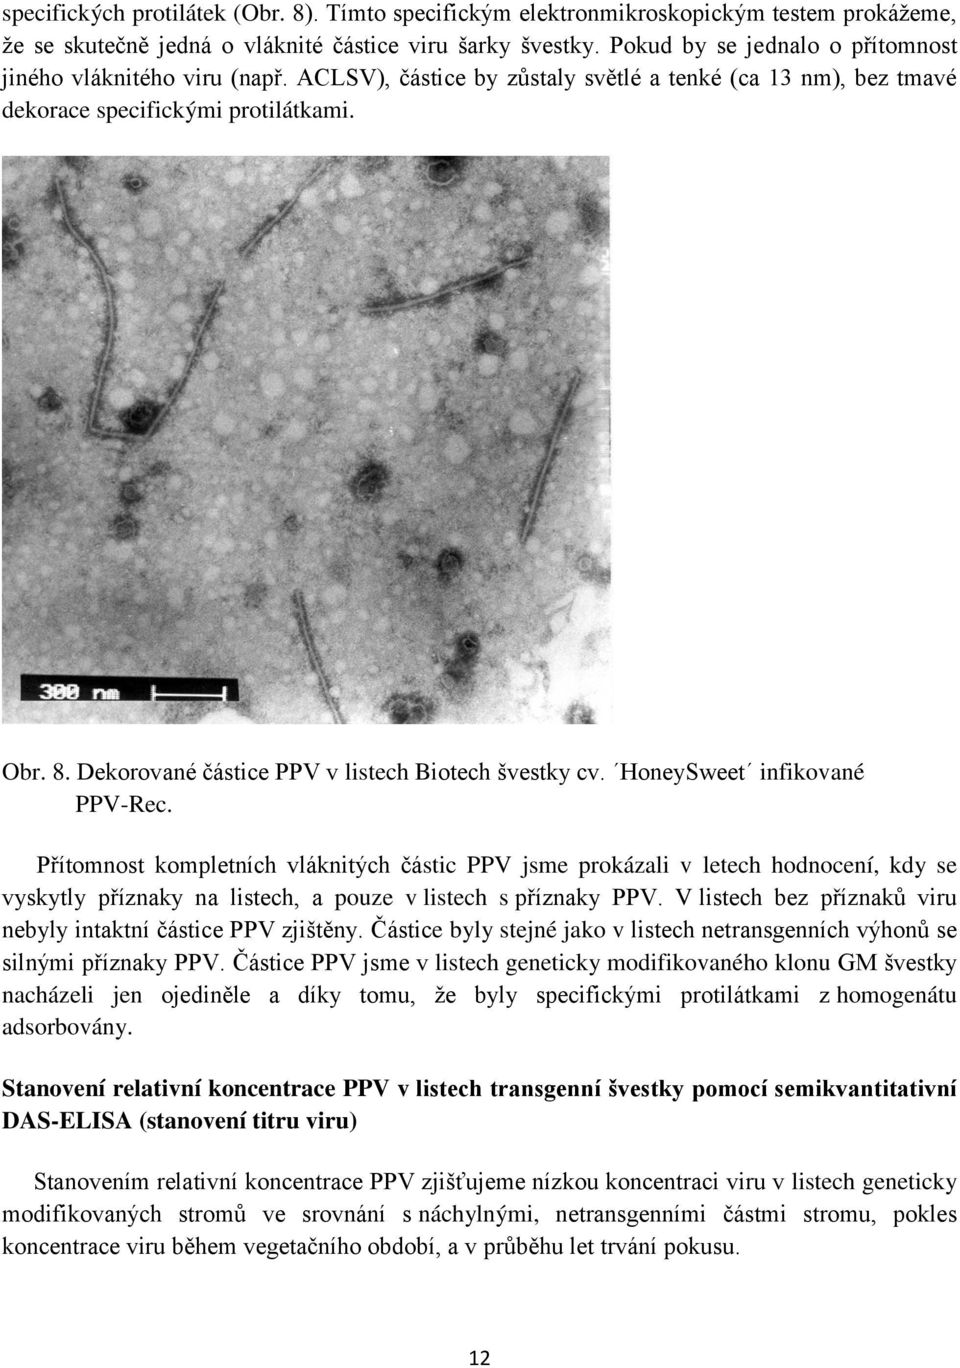 Dekorované částice PPV v listech Biotech švestky cv. HoneySweet infikované PPV-Rec.